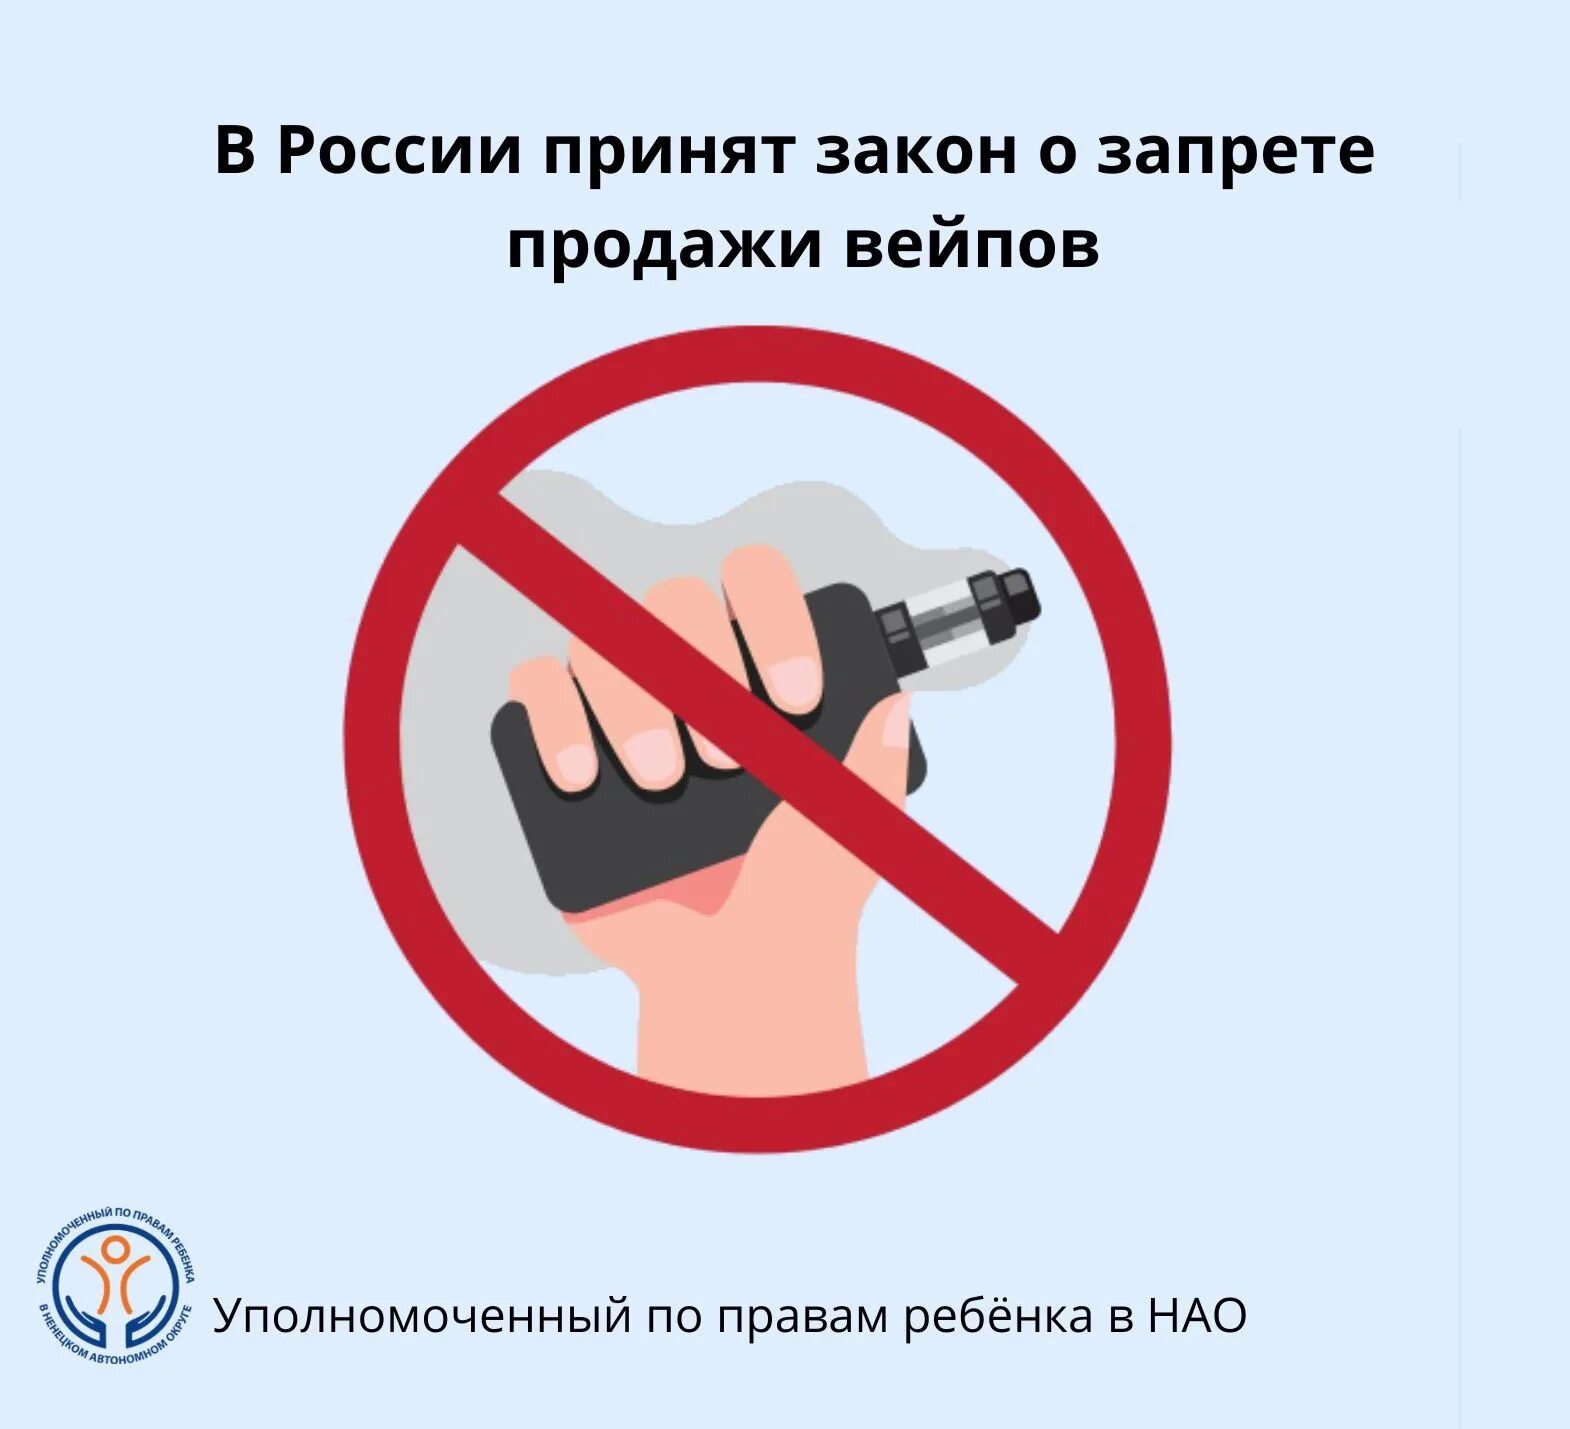 В россии хотят запретить вейпы. Запрет вейпов. Электронные сигареты запрещены. Курение электронных сигарет запрещено. Закон о запрете вейпов.